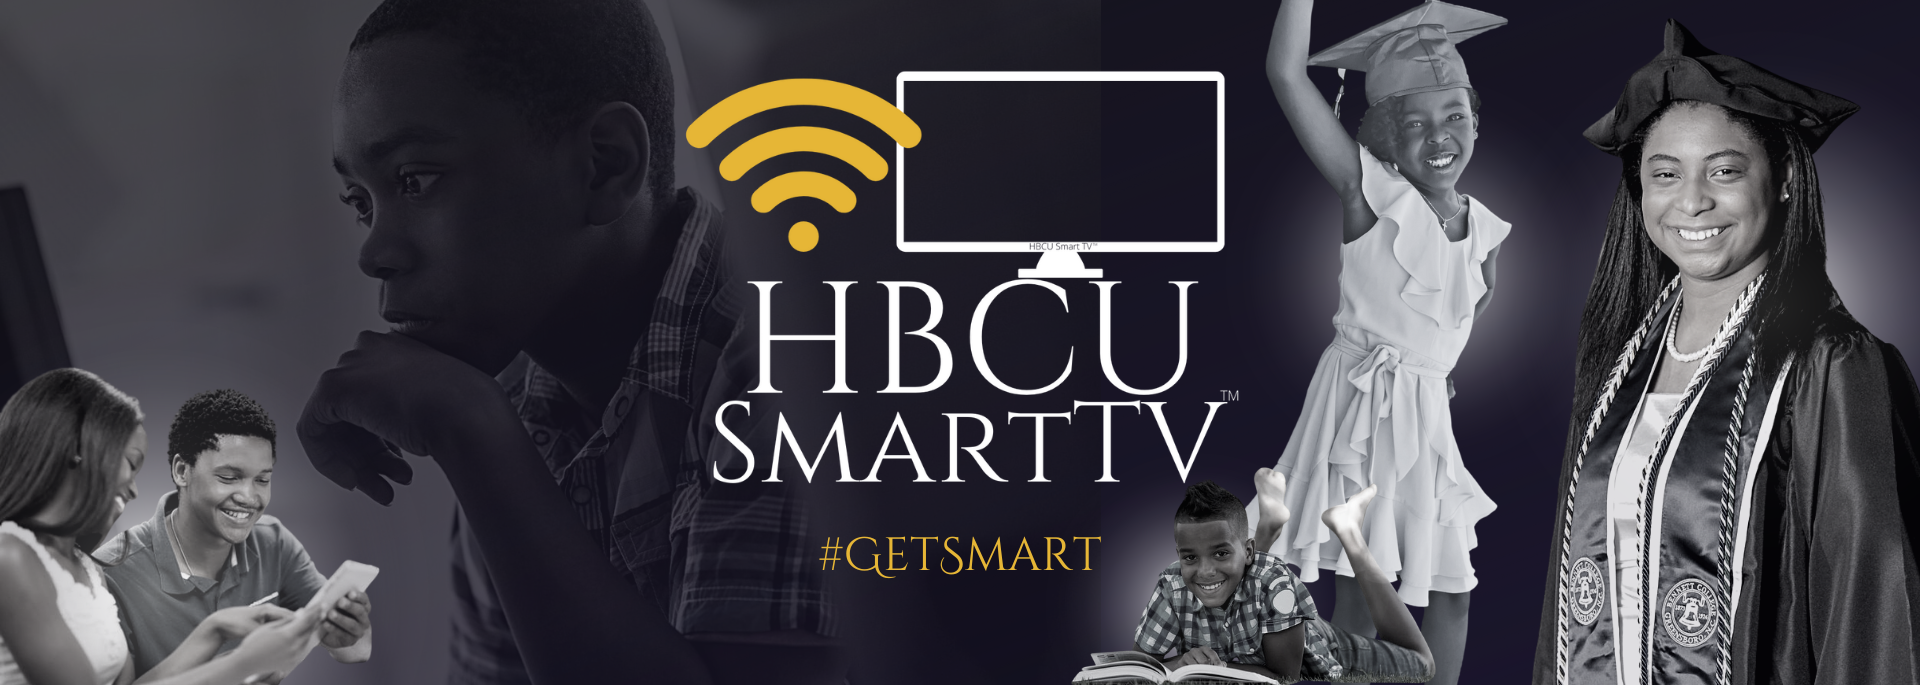 HBCU Smart TV